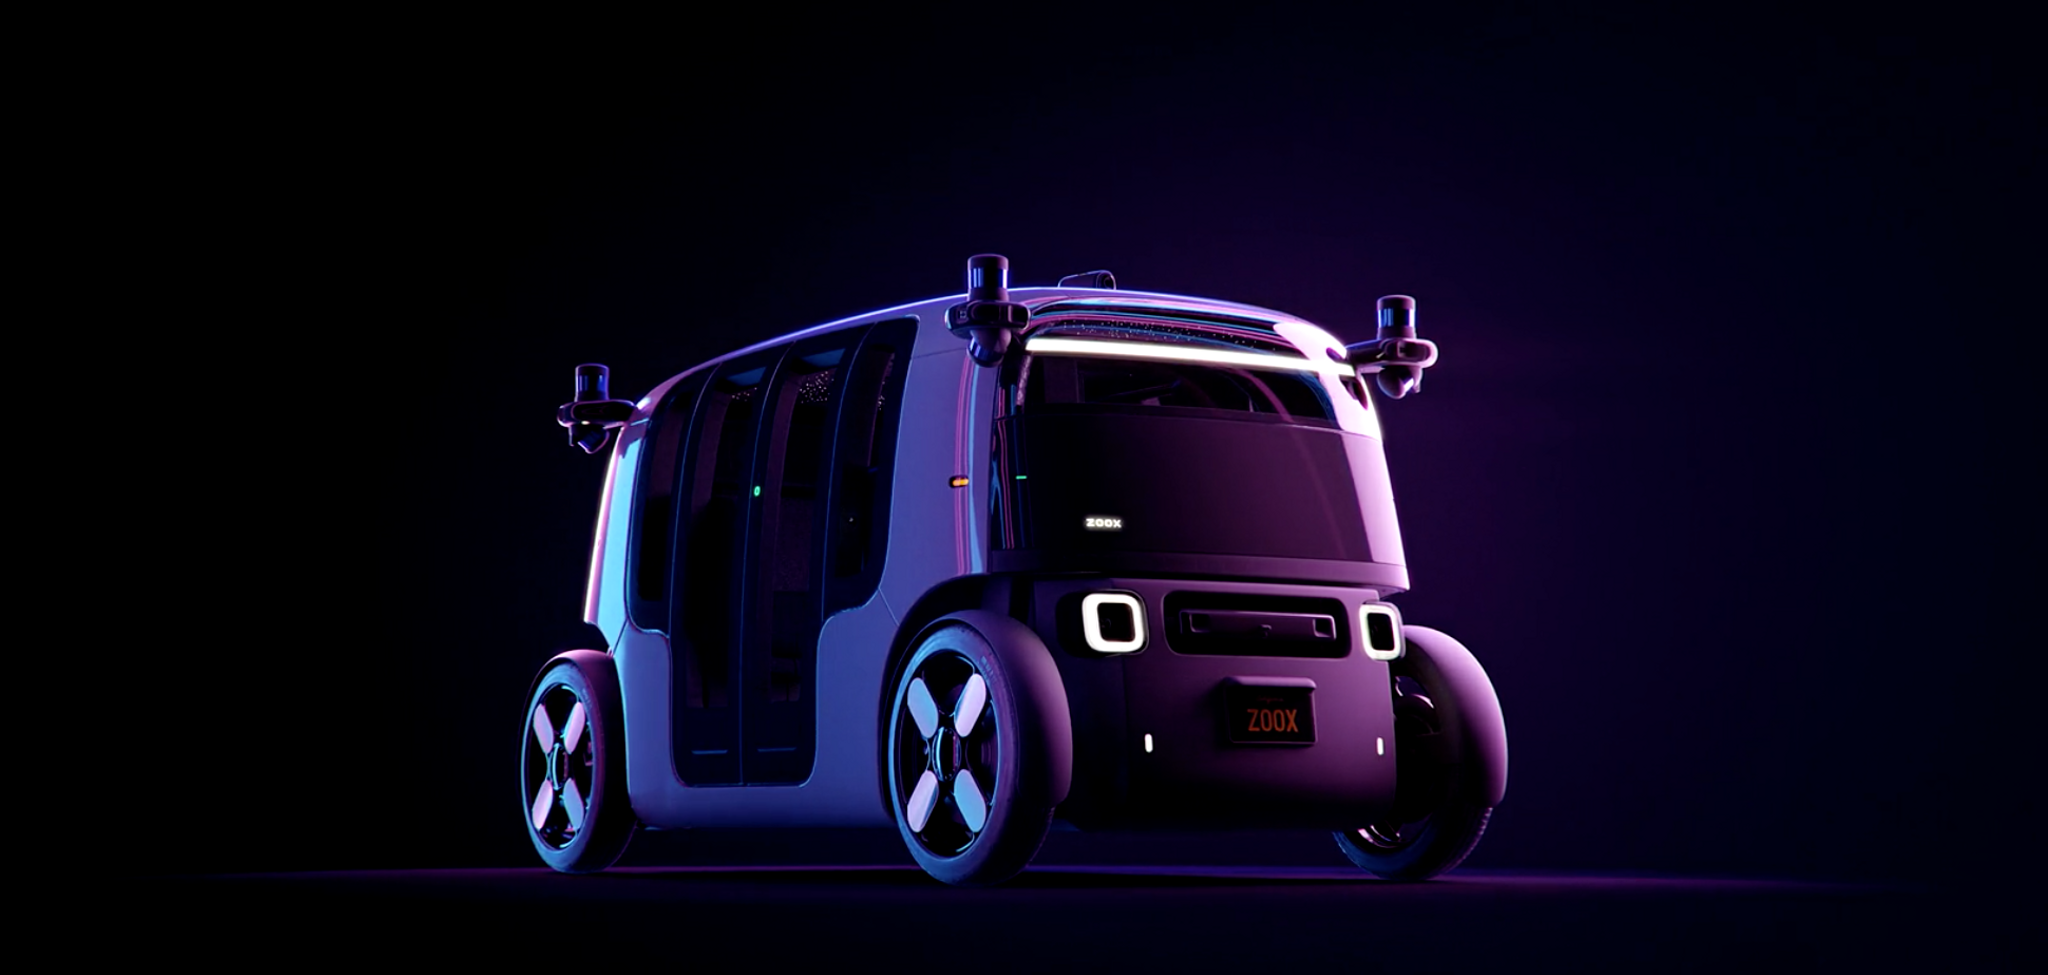 Amazon launches robo-taxis in Las Vegas